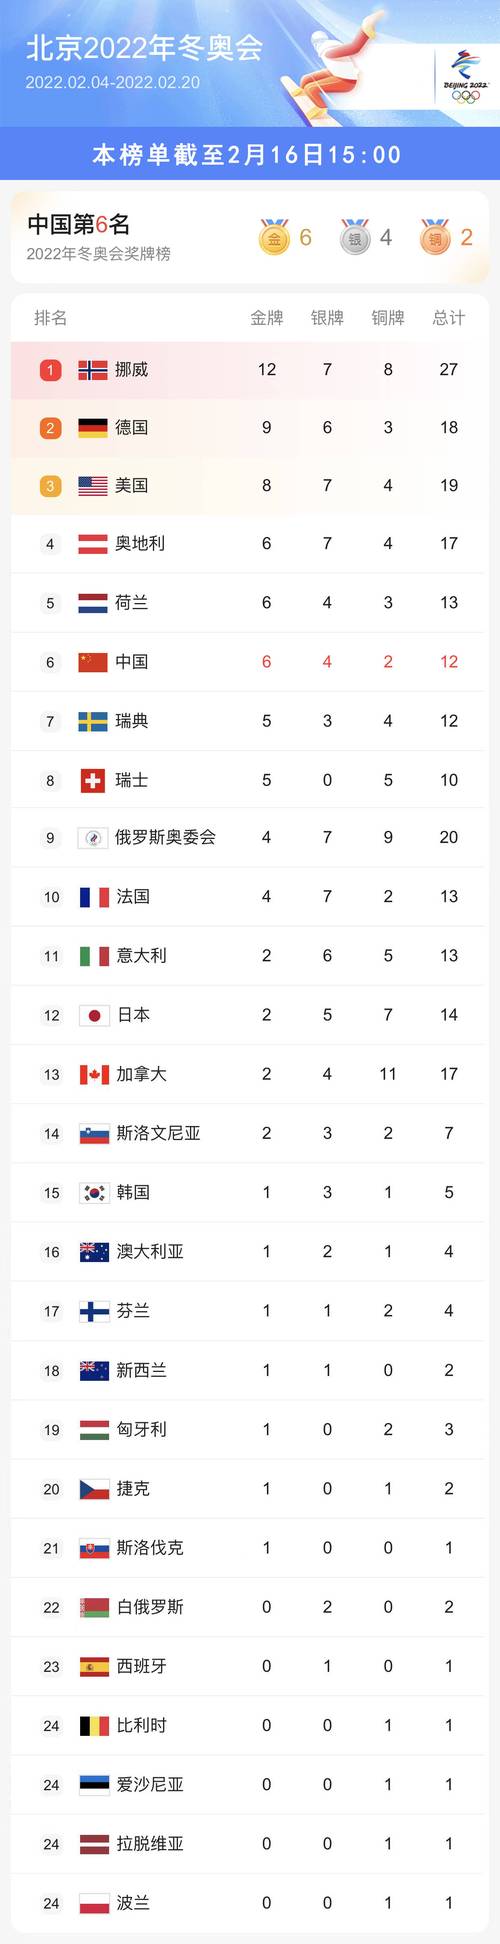 冬奥会奖牌榜排名榜